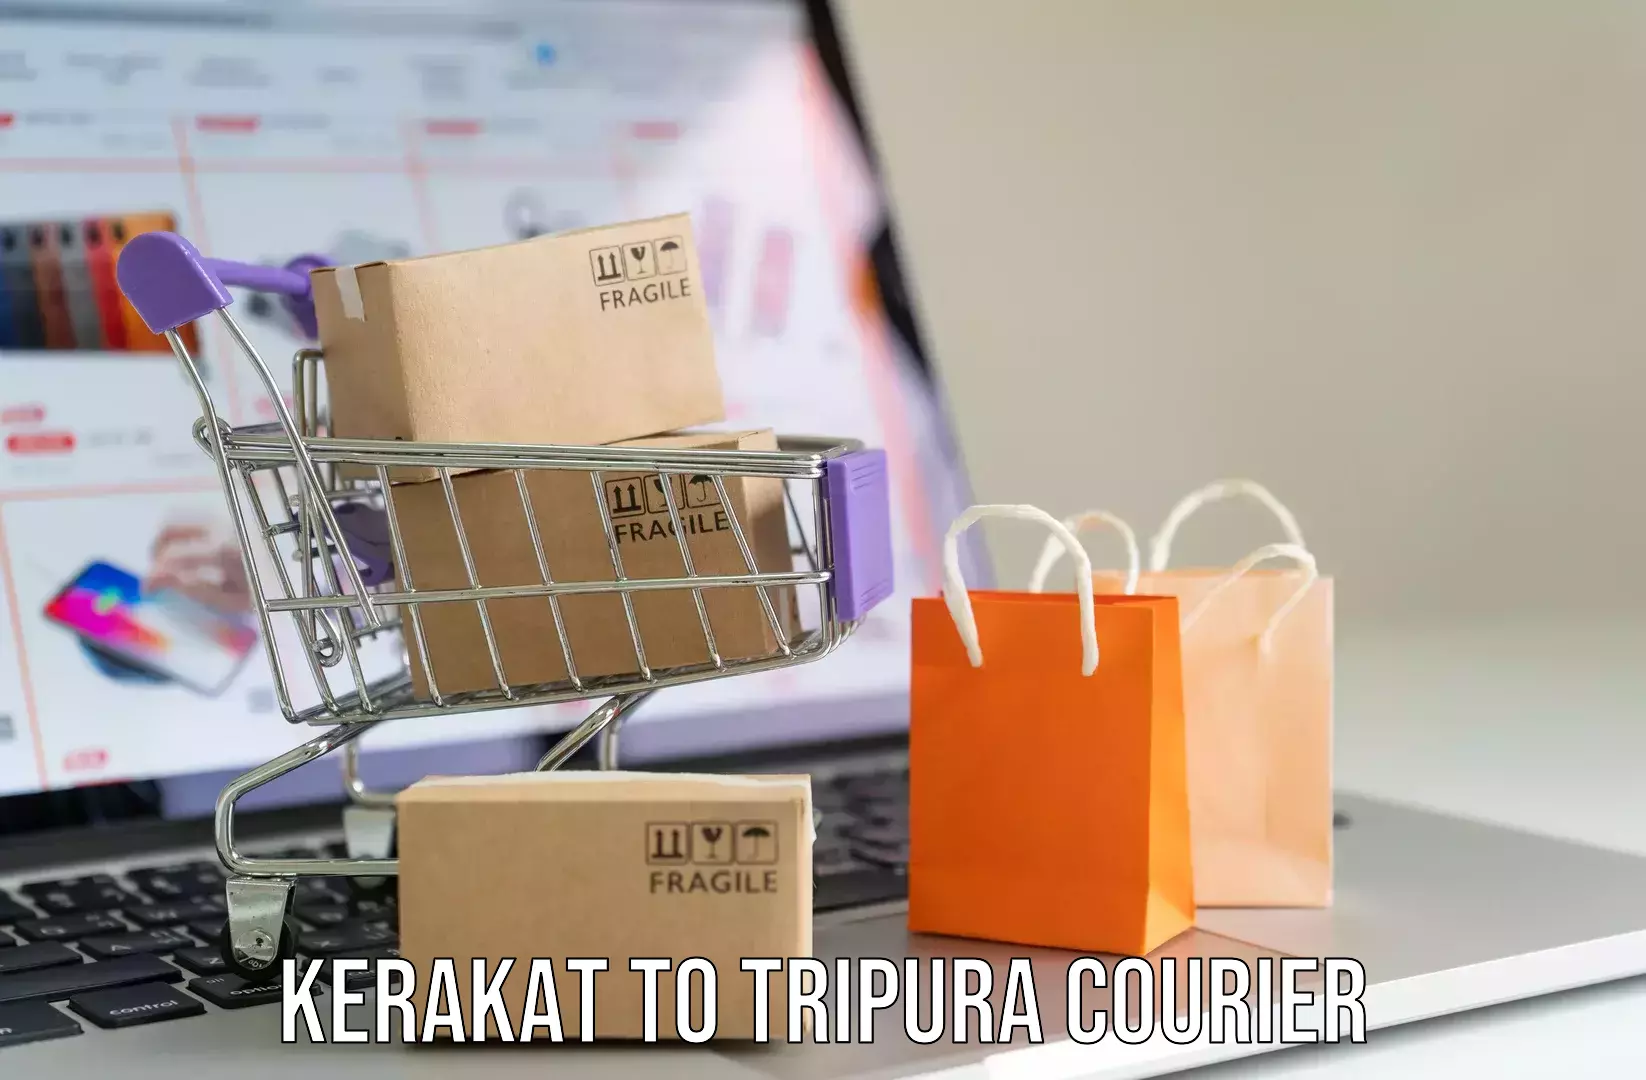 Comprehensive baggage service Kerakat to Tripura